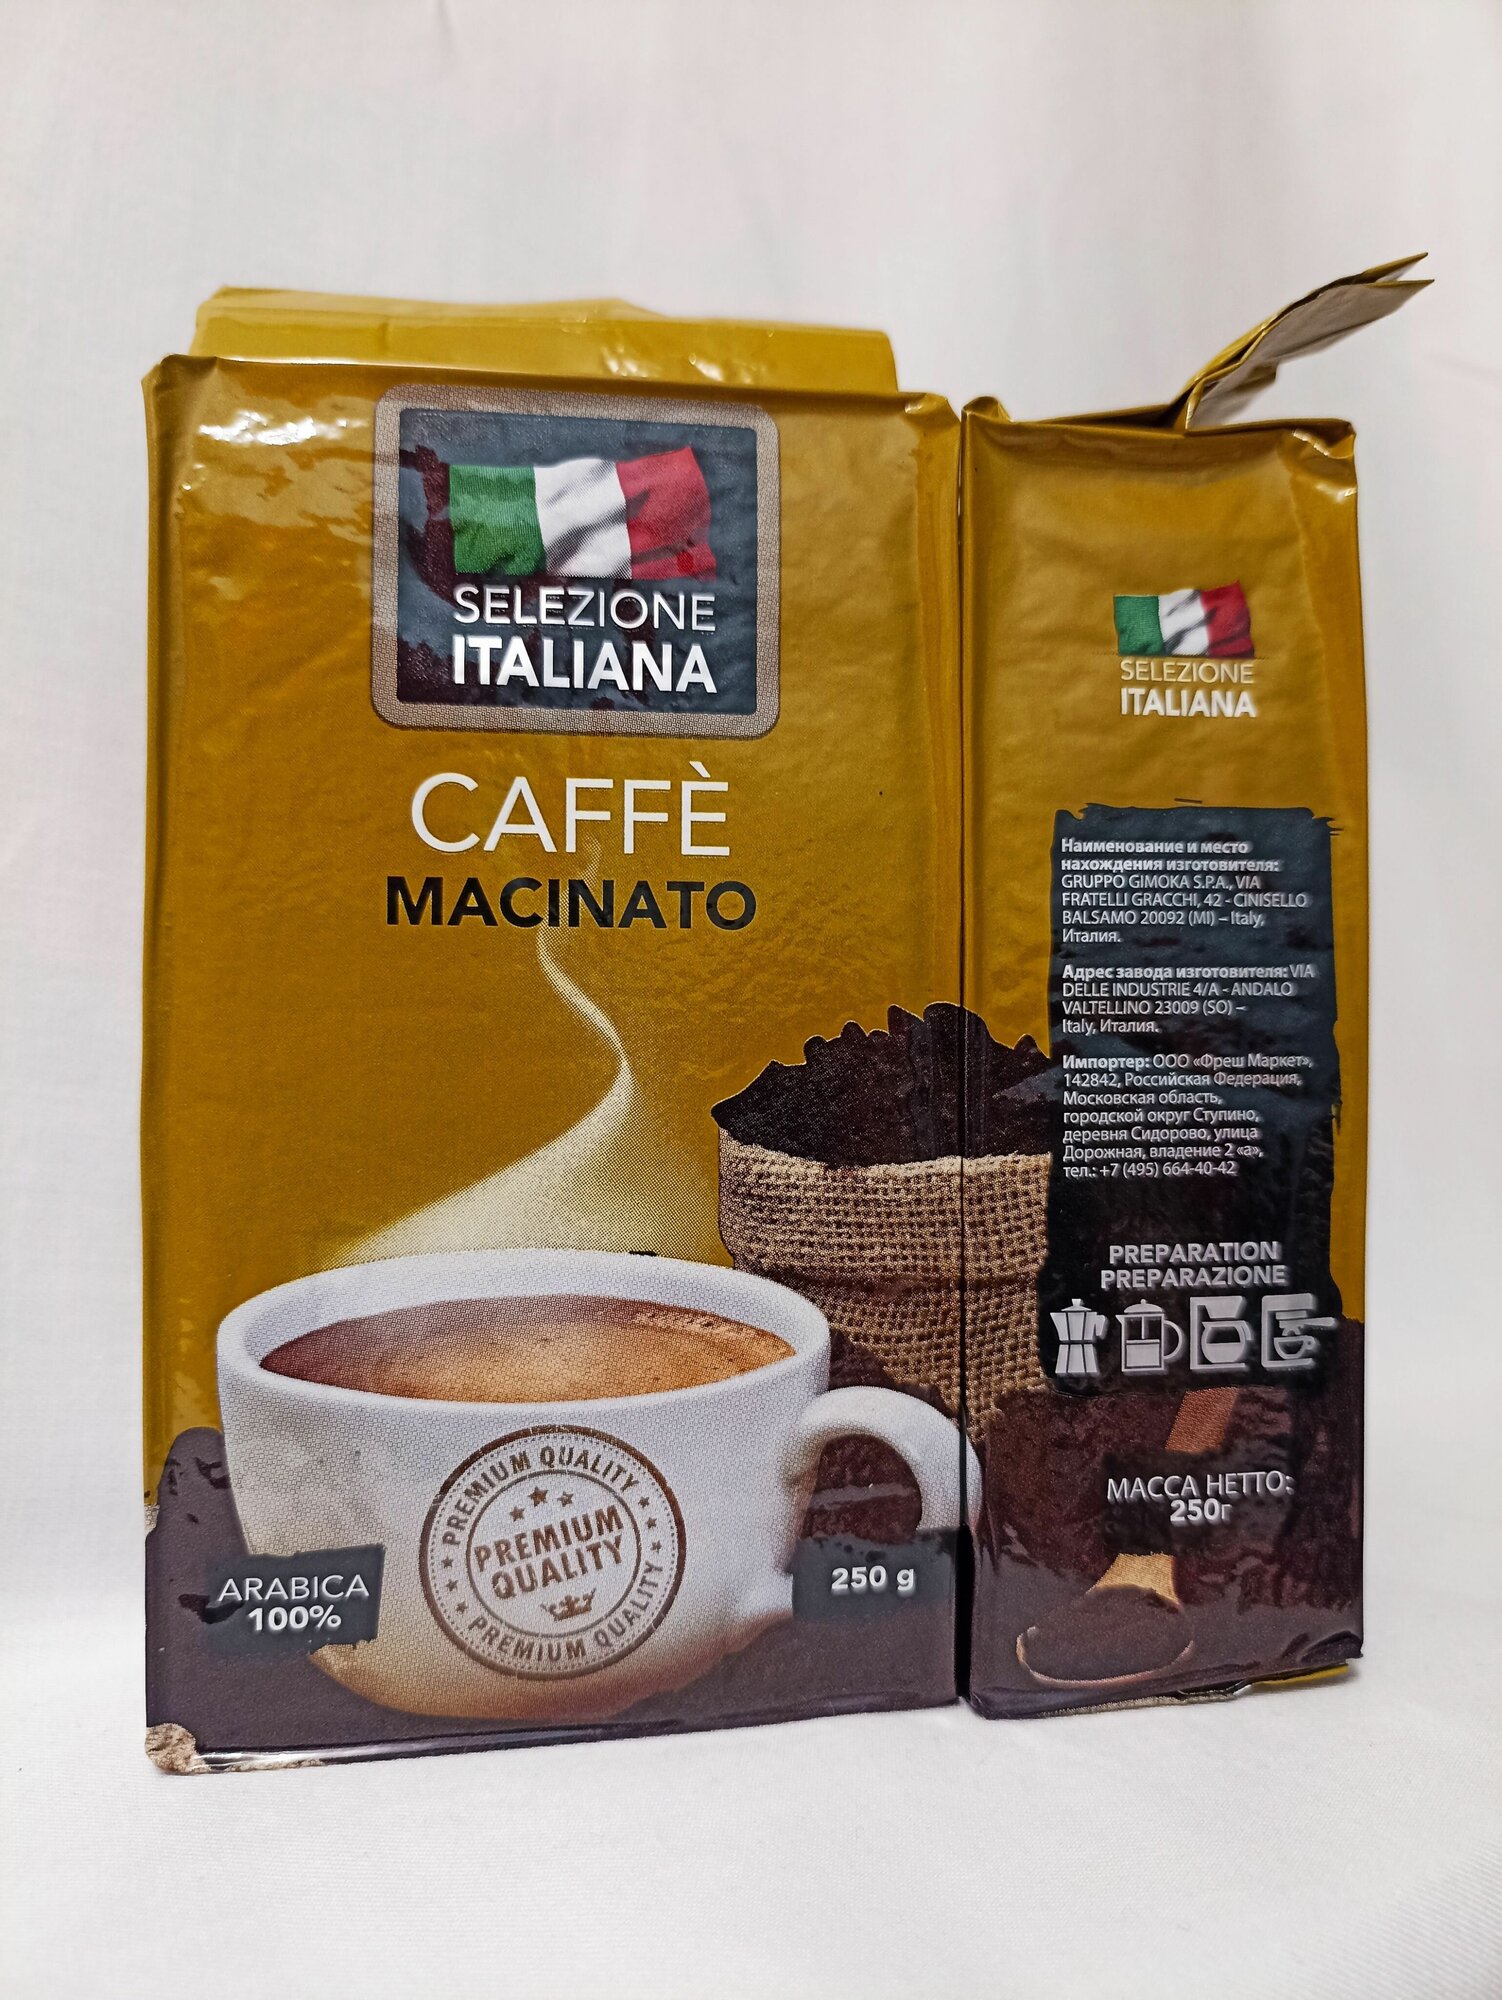 Кофе молотый 500 г (2 шт. по 250 г) Арабика 100% (Италия) Selezione ITALIANA CAFFE MACINATO, кофе натуральный жареный молотый в упаковке по 250 грамм - фотография № 3